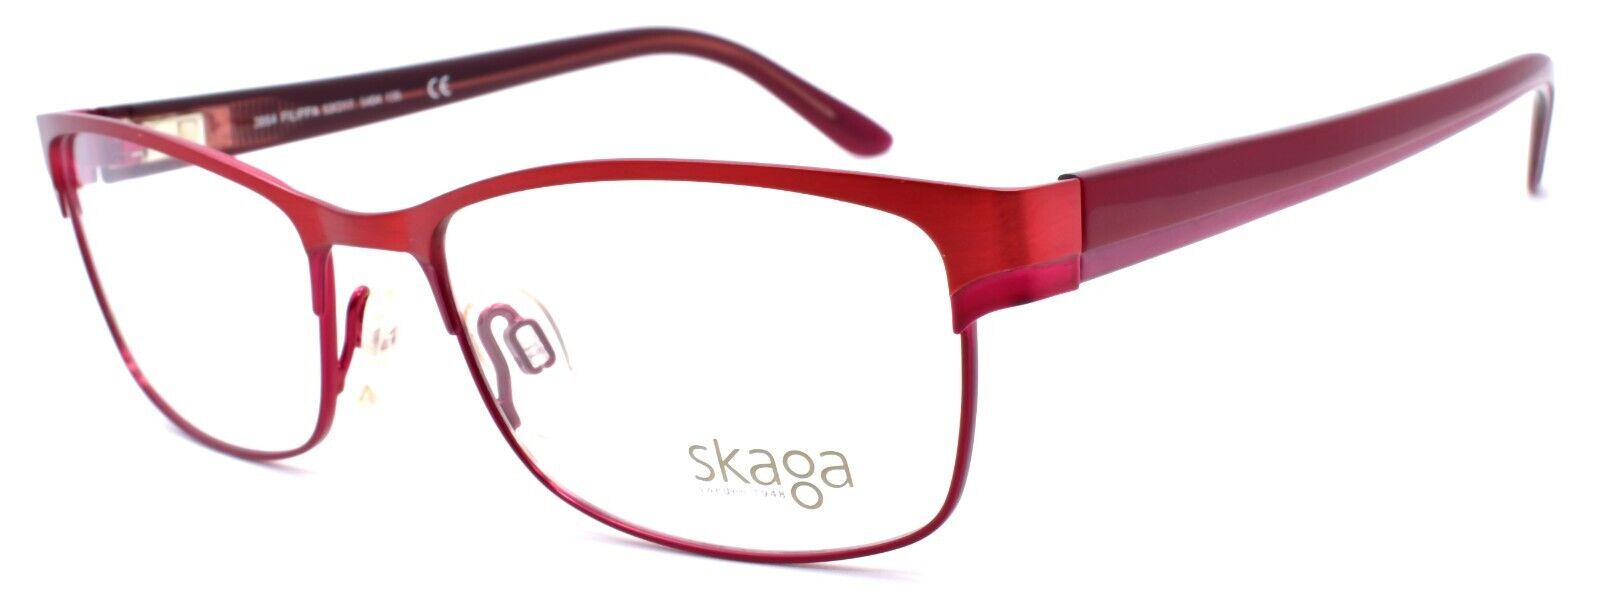 1-Skaga 3864 Filippa 5404 Women's Eyeglasses Frames 53-17-135 Red-IKSpecs